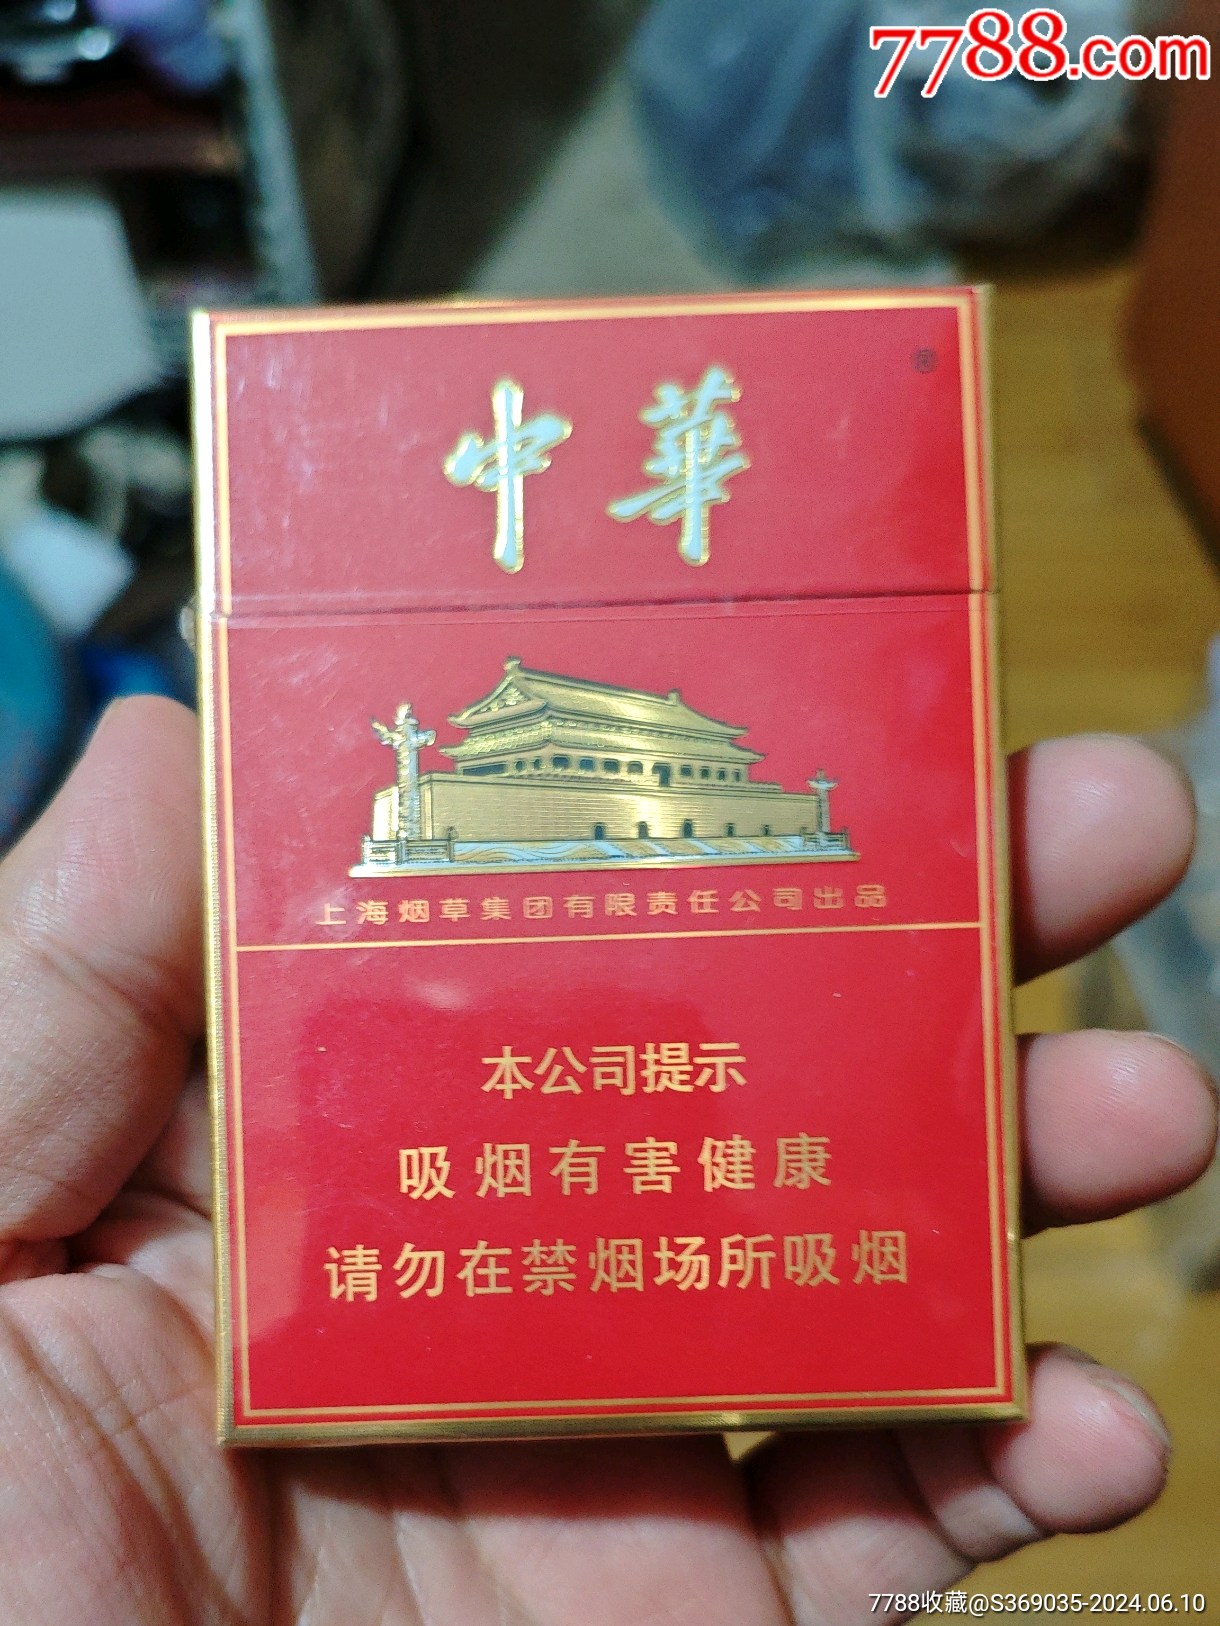 中华小细烟硬盒20支6mg图片